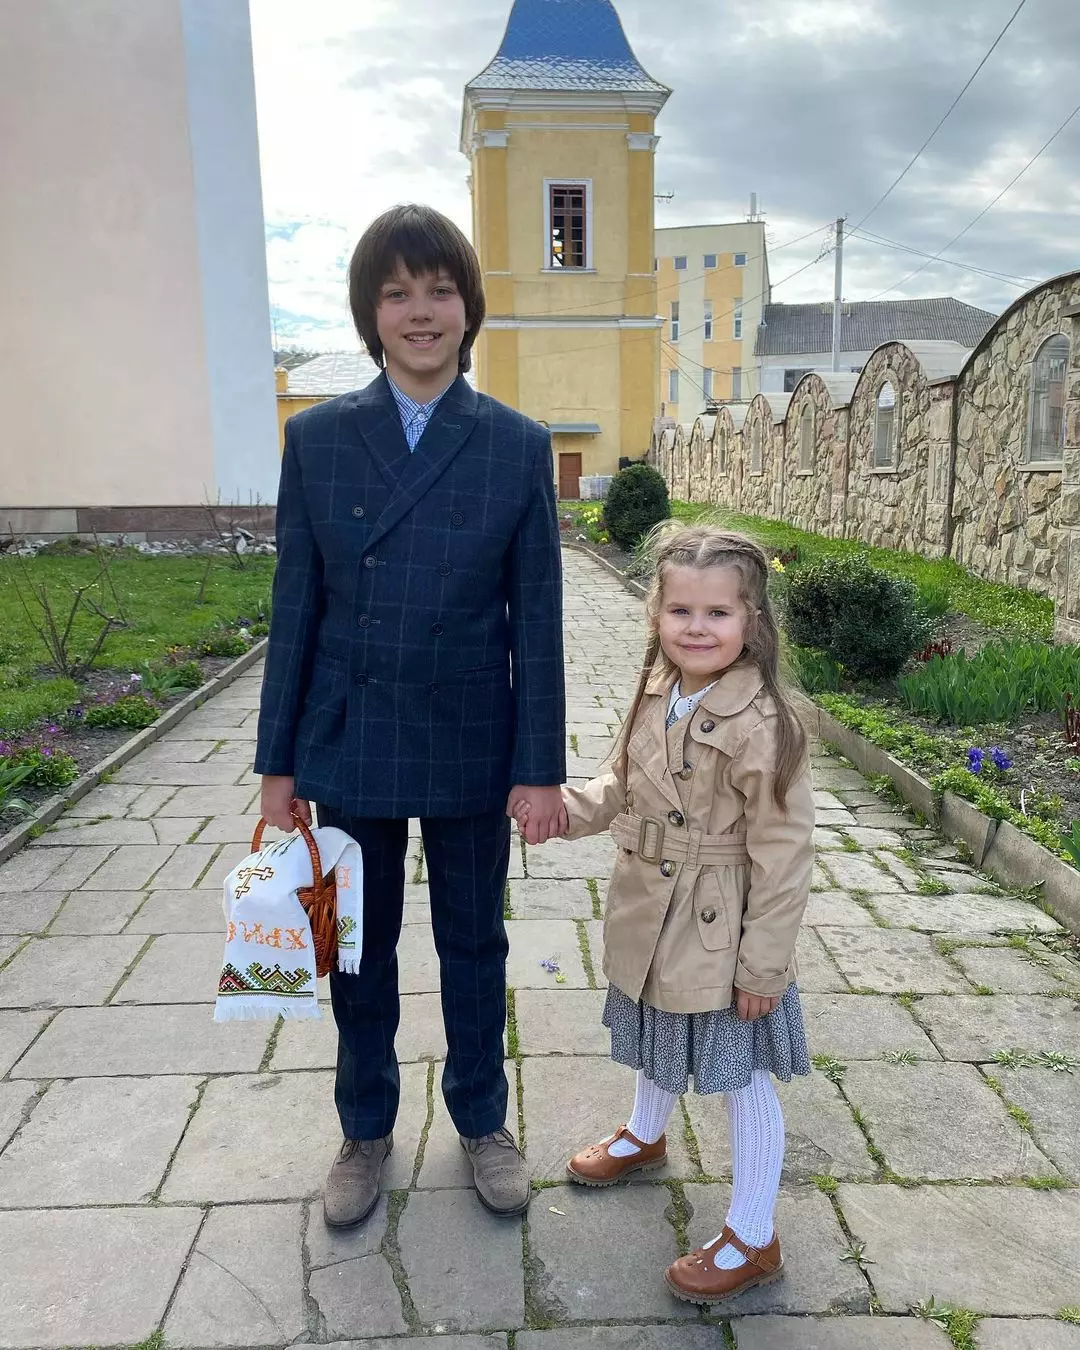 Син Сергія Притули Дмитро зі своєю молодшою сестрою з боку матері – Катею